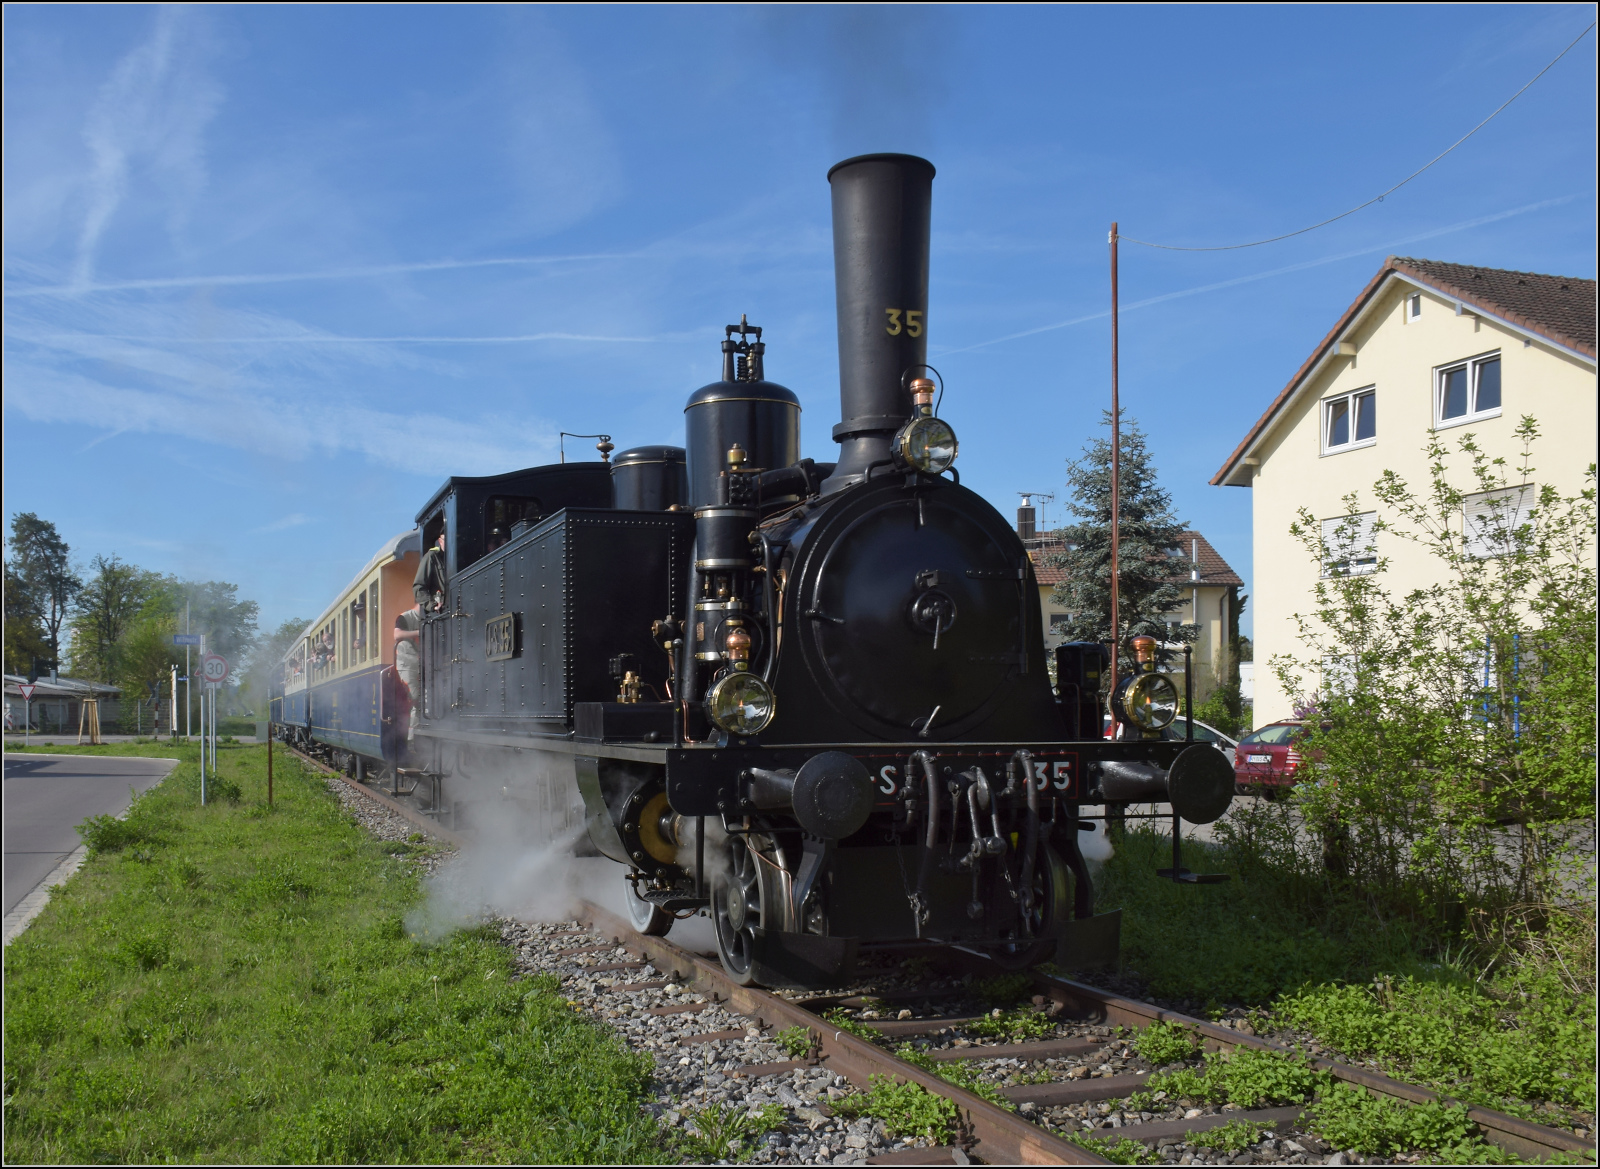 Saisonstart auf dem Schweizerbähnle.

Jura-Simplon Eb 2/4 35 am Bahnübergang Bohlingerstrasse in Singen. April 2024.